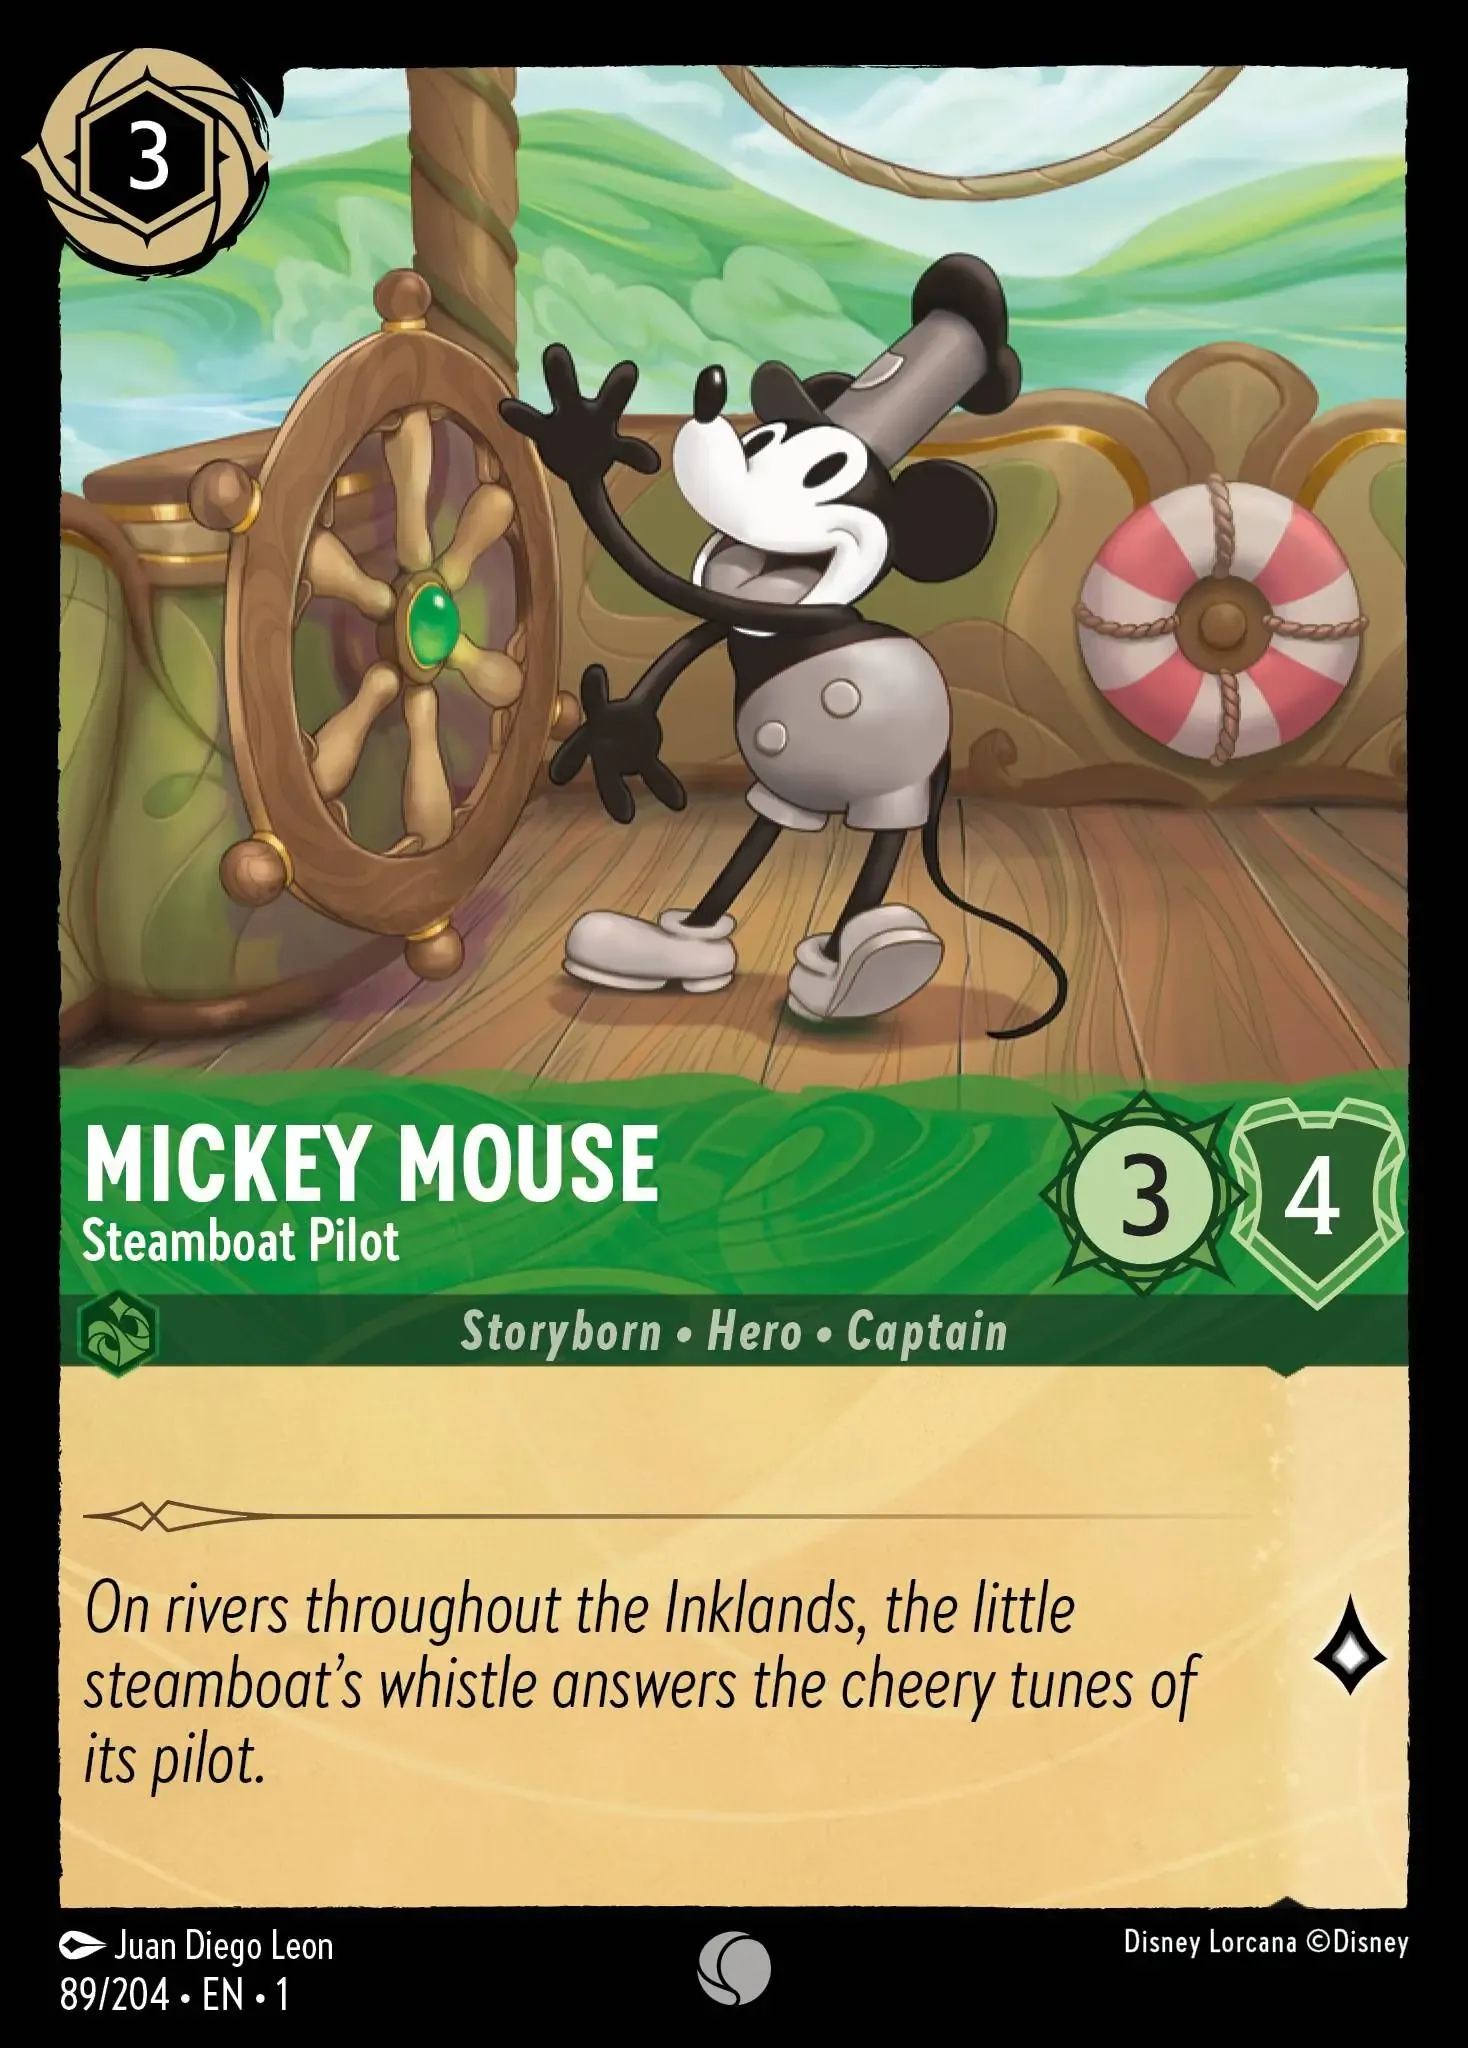 Mickey Mouse - Friendly Face - Cartes Promo Lorcana card 18/P1